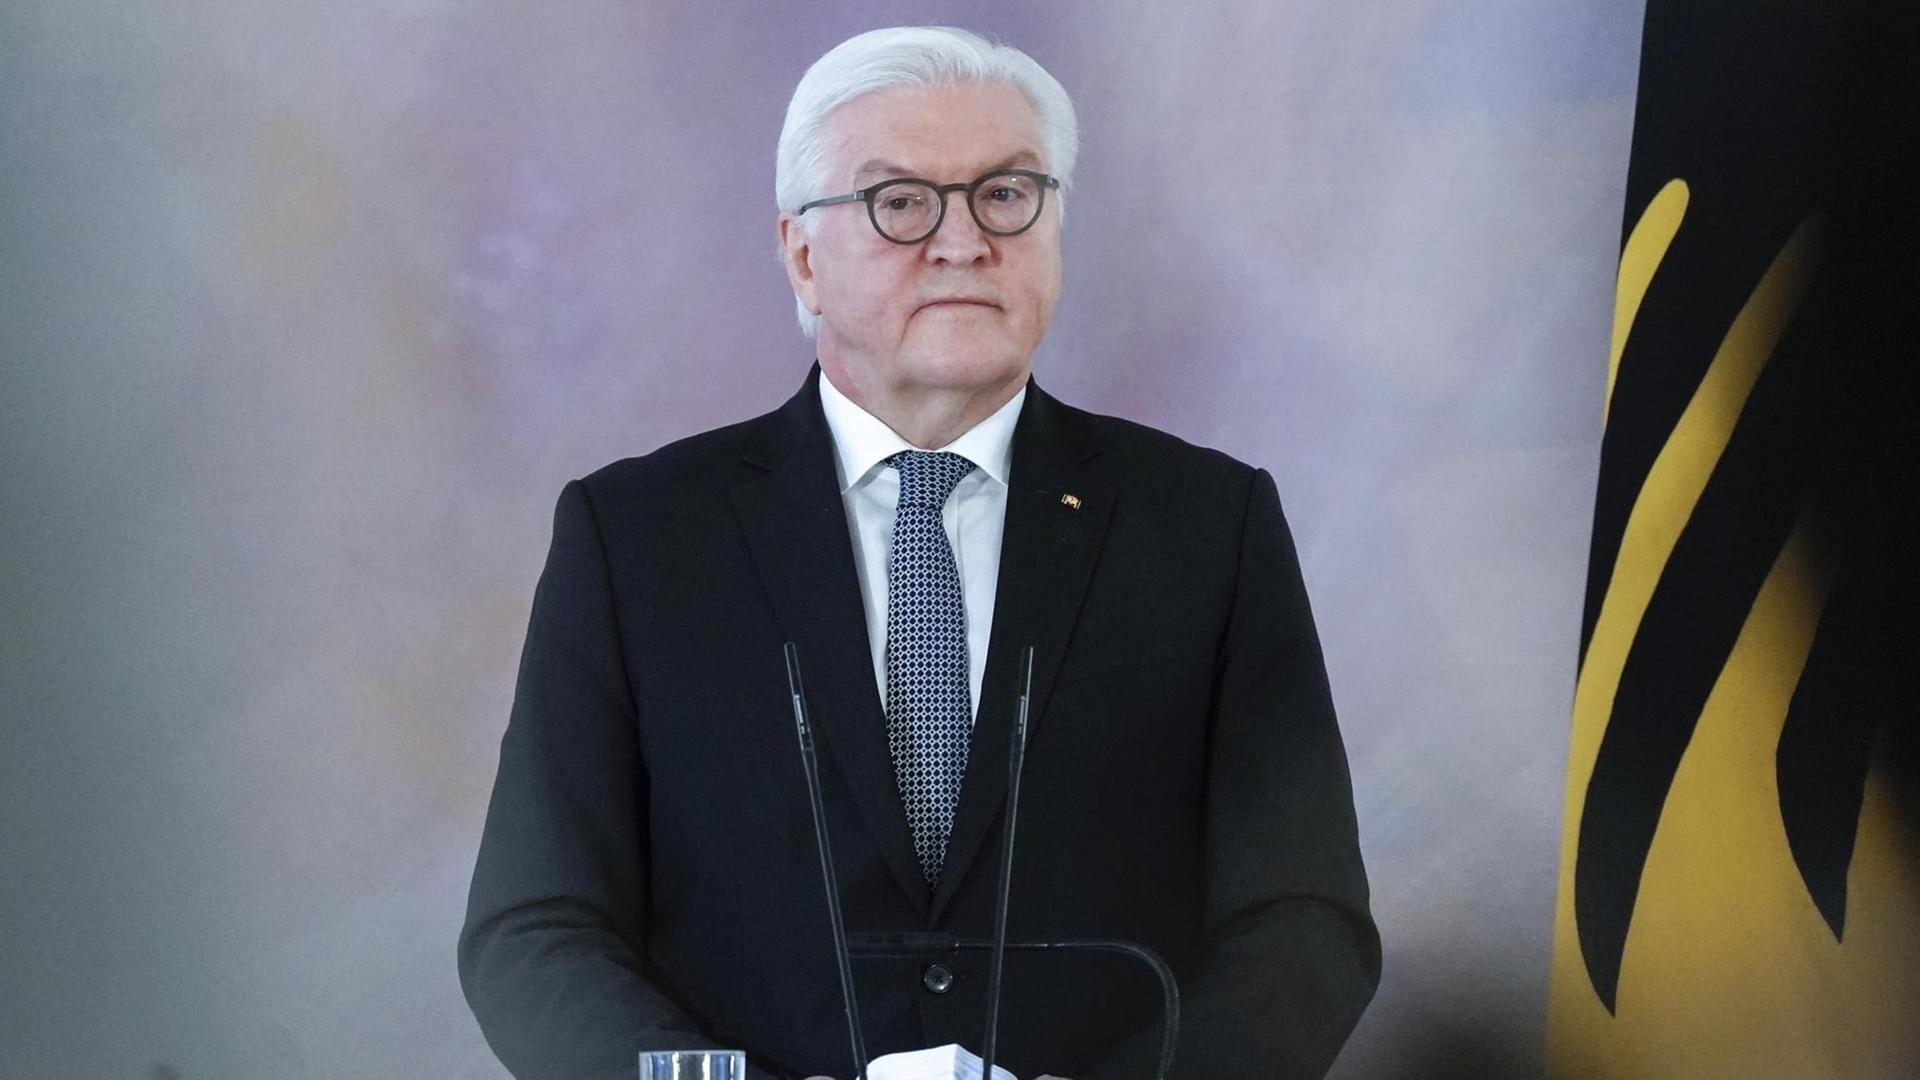 Debatte um Migration - Bundespräsident Steinmeier für Begrenzung - "Situation erinnert an die 1990er-Jahre"